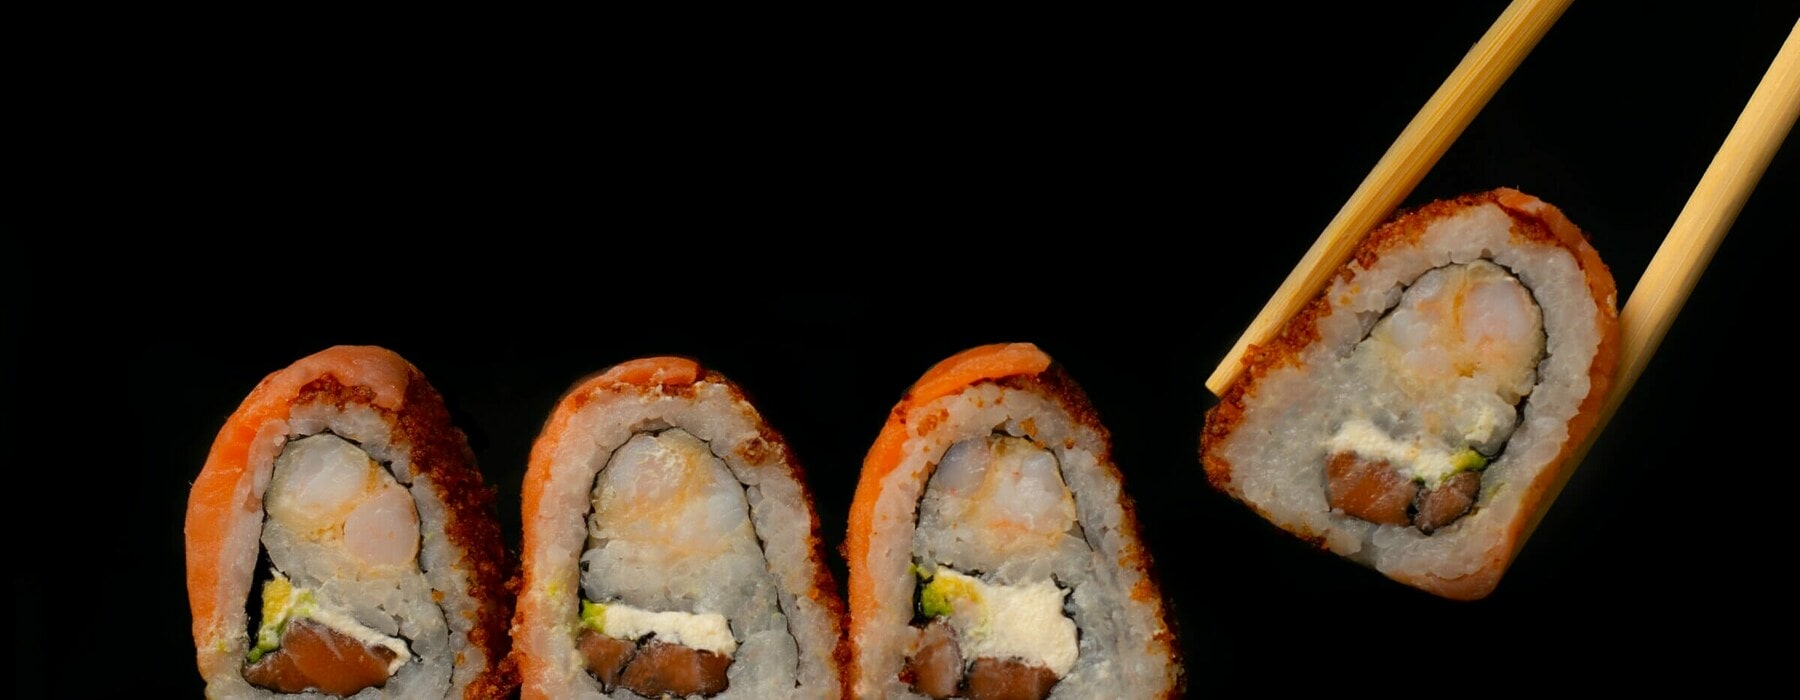 Sushi Date Night Sashimi